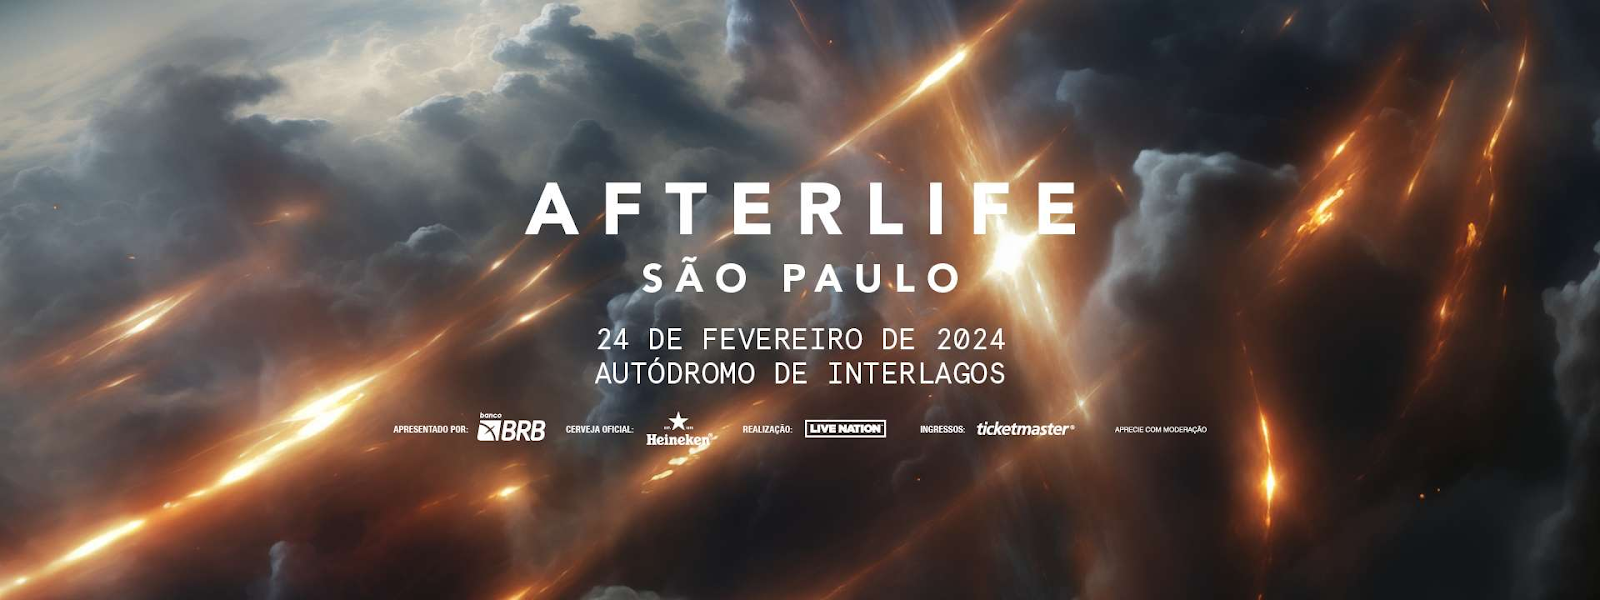 Heineken® e a cerveja oficial do Afterlife Sao Paulo uma das maiores festas eletronicas do mundo POP CYBER